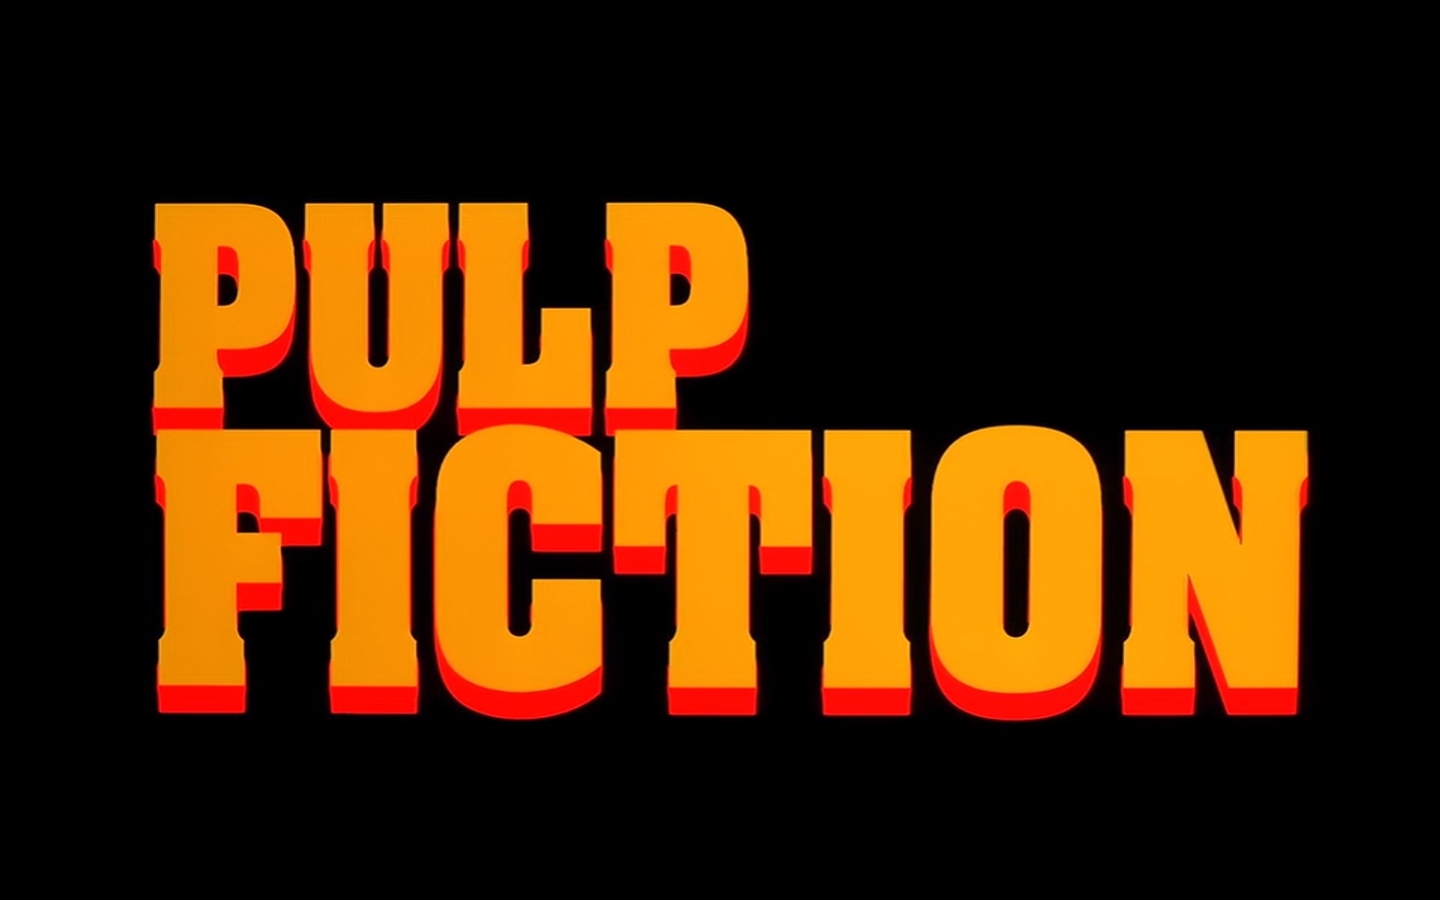 Pulp Fiction Picture